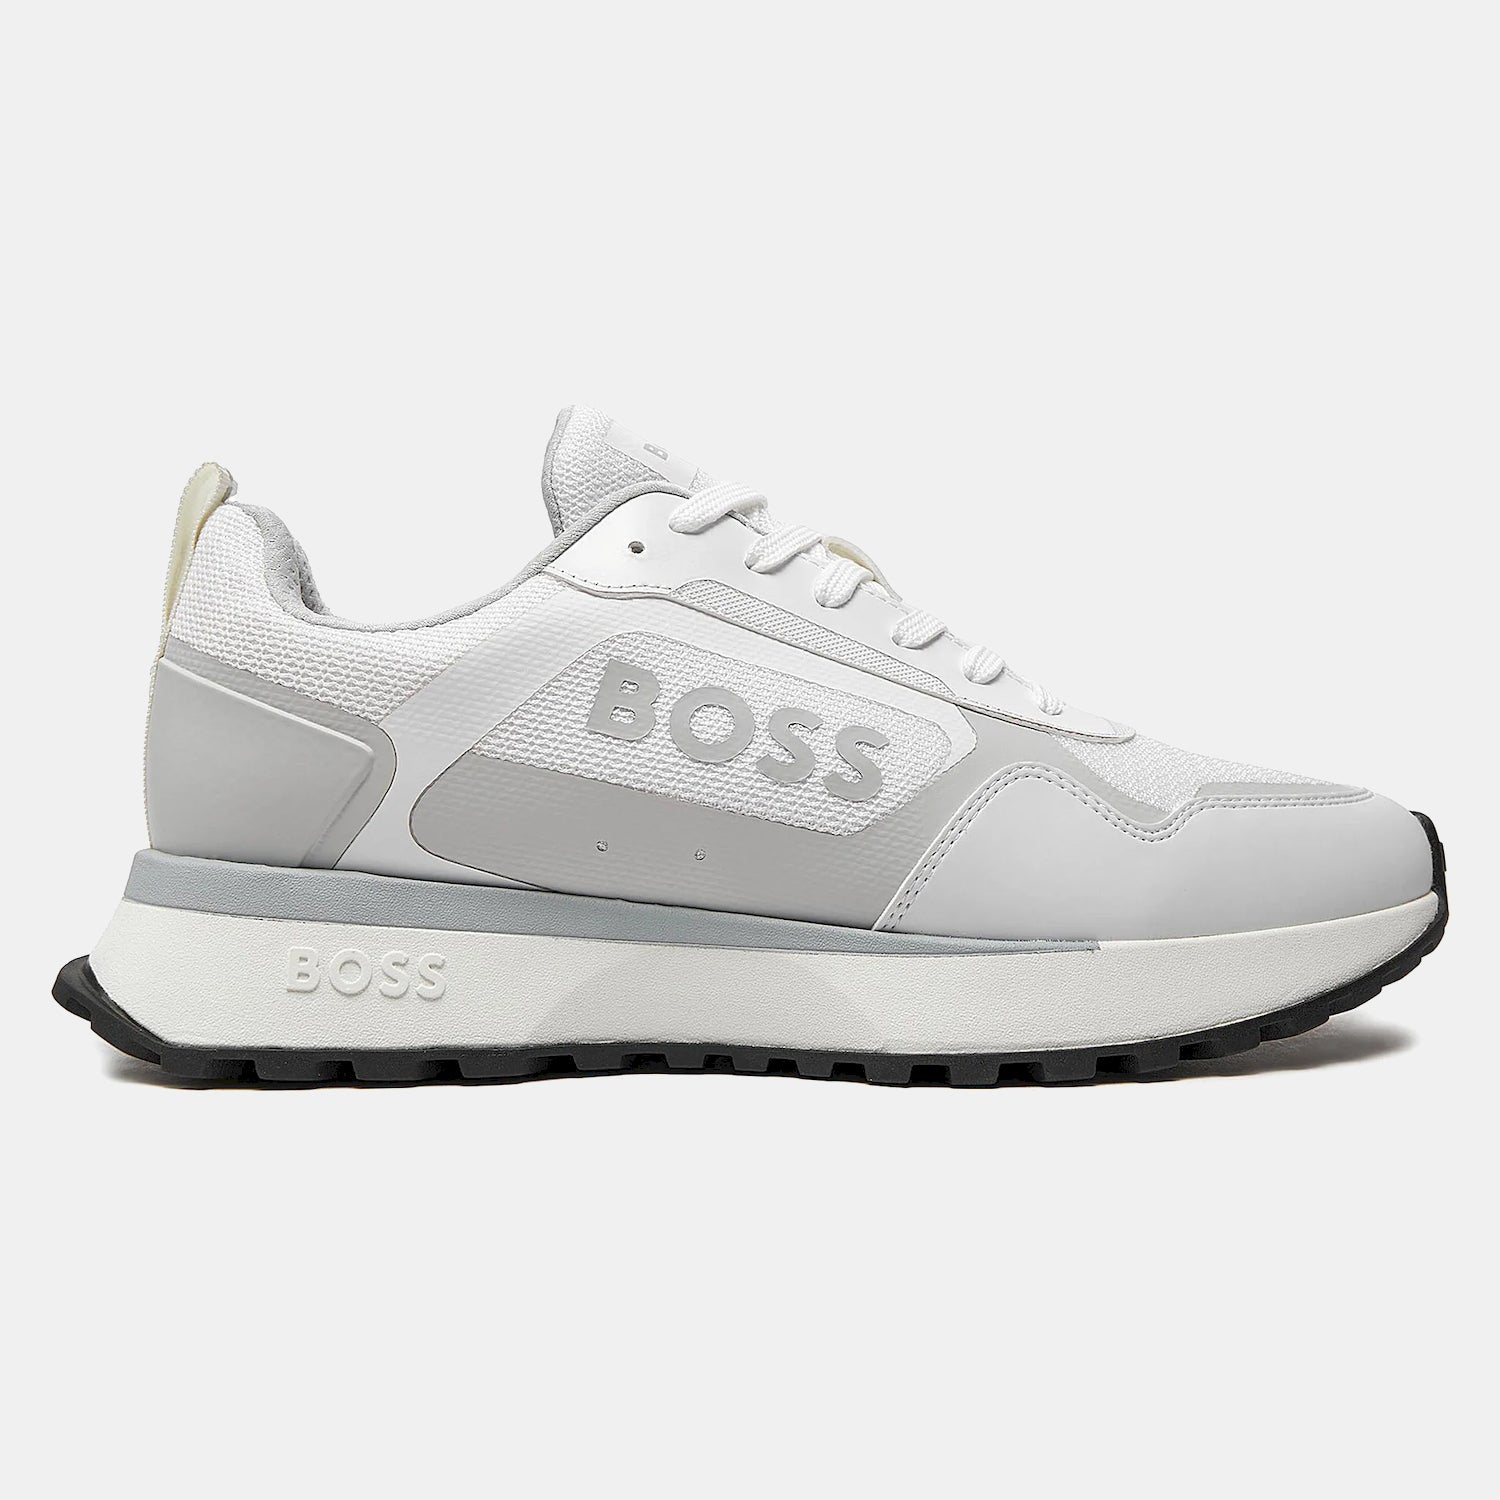 Boss Sapatilhas Sneakers Shoes Jonah_runn_mer White Branco_shot6